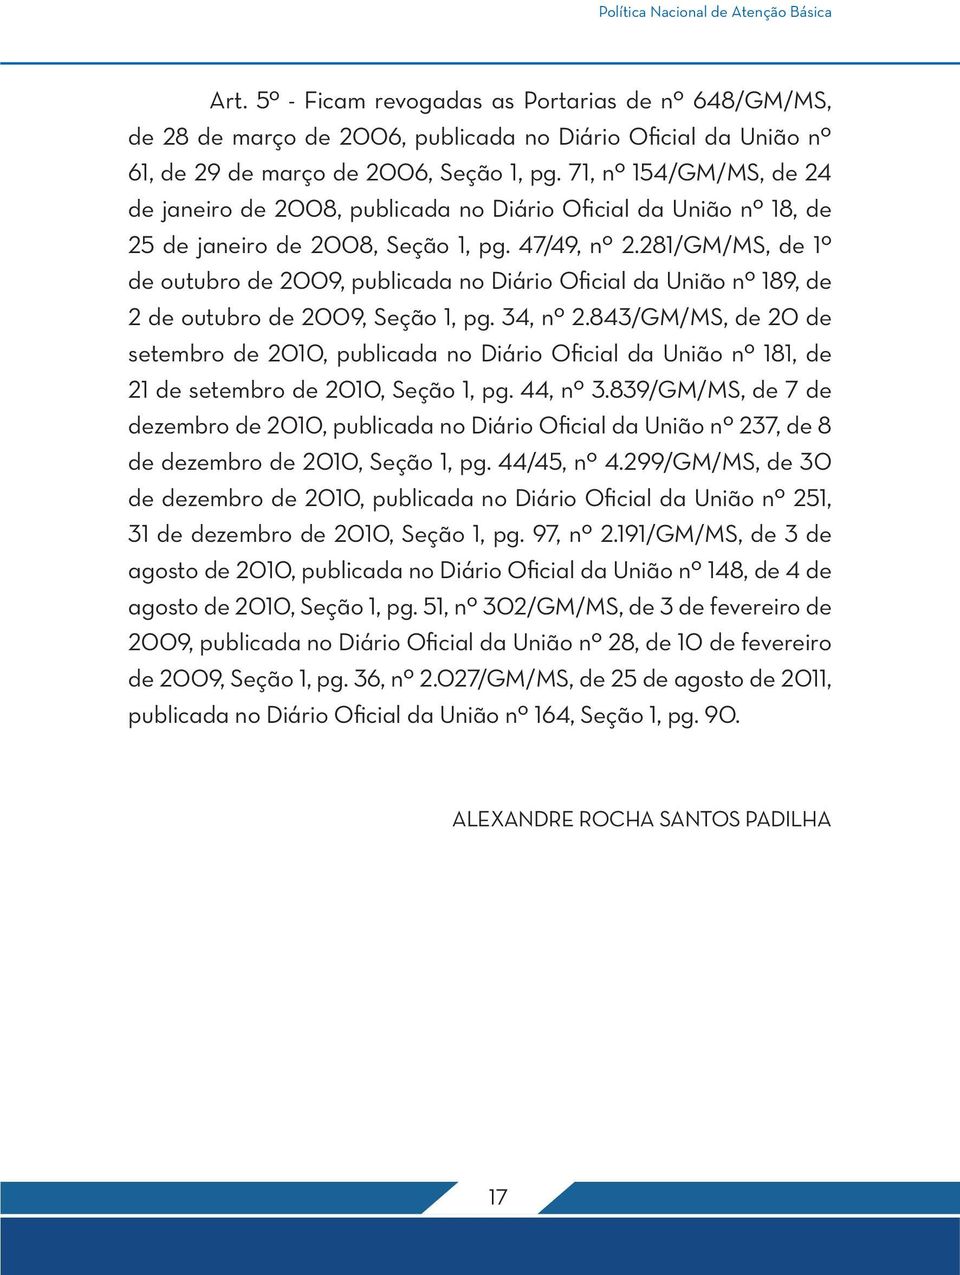 281/GM/MS, de 1º de outubro de 2009, publicada no Diário Oficial da União nº 189, de 2 de outubro de 2009, Seção 1, pg. 34, nº 2.